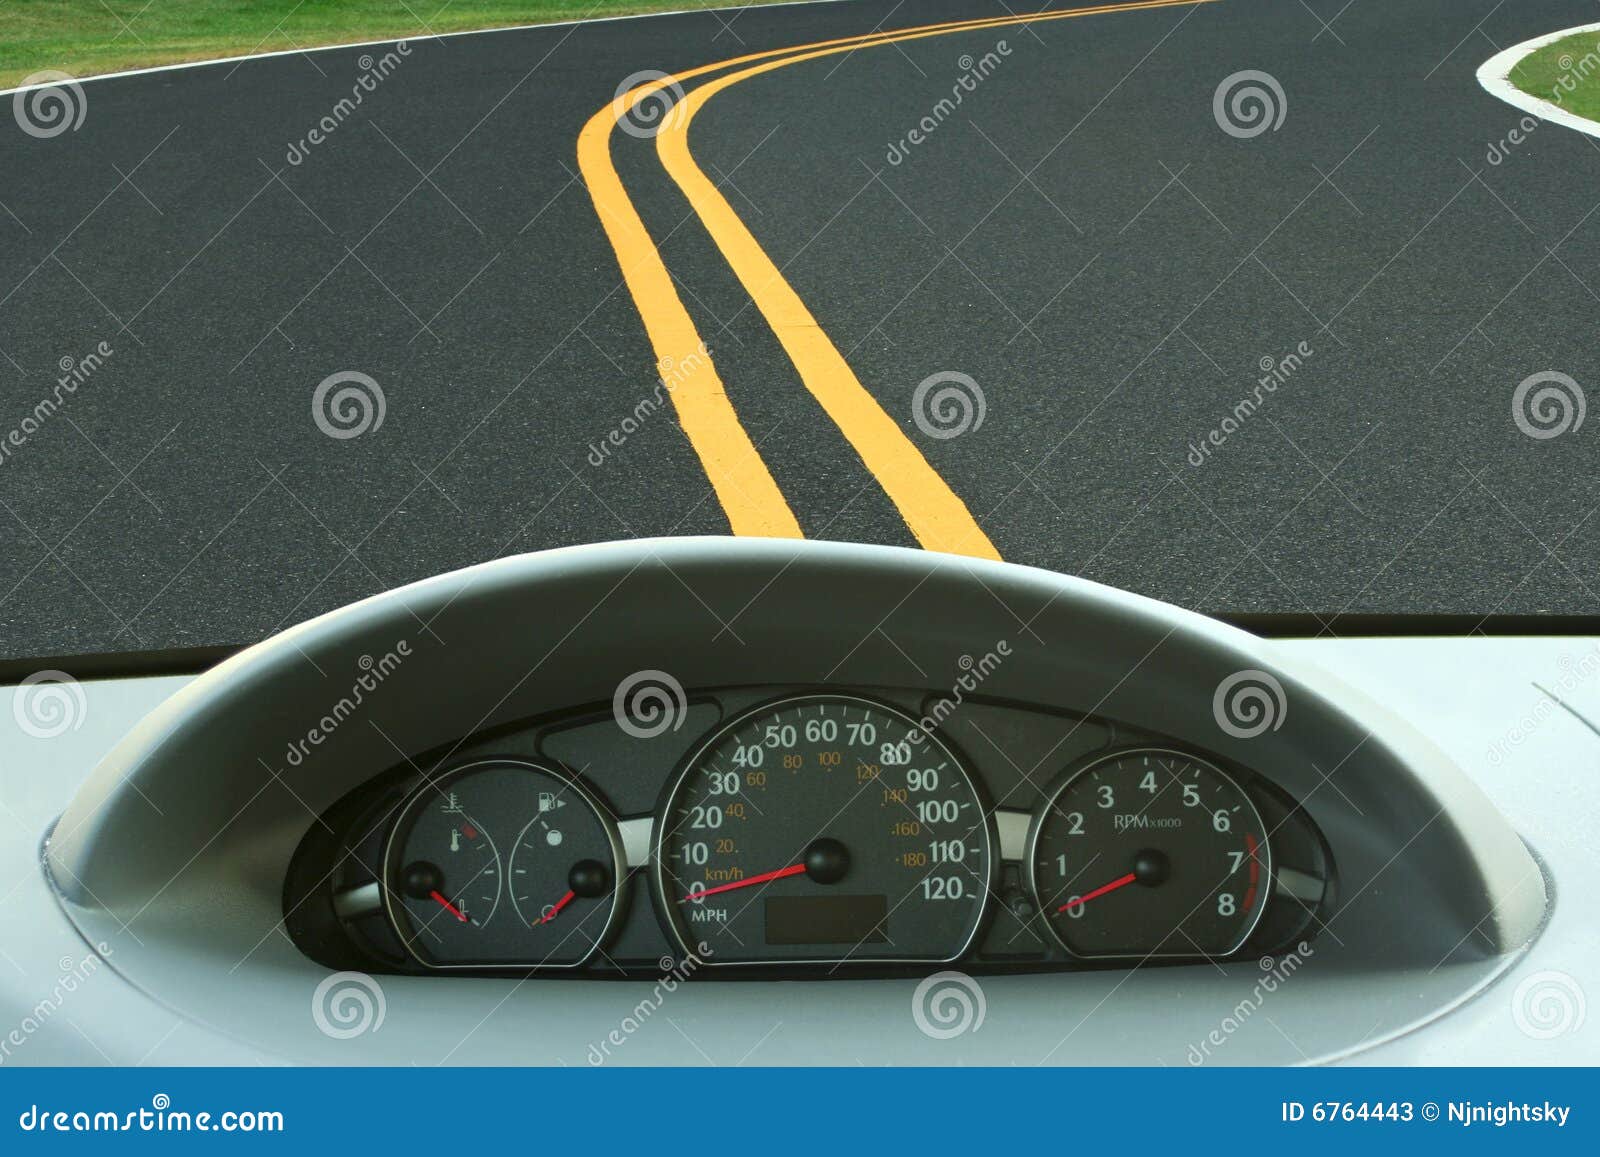 car dashboard and curvy road